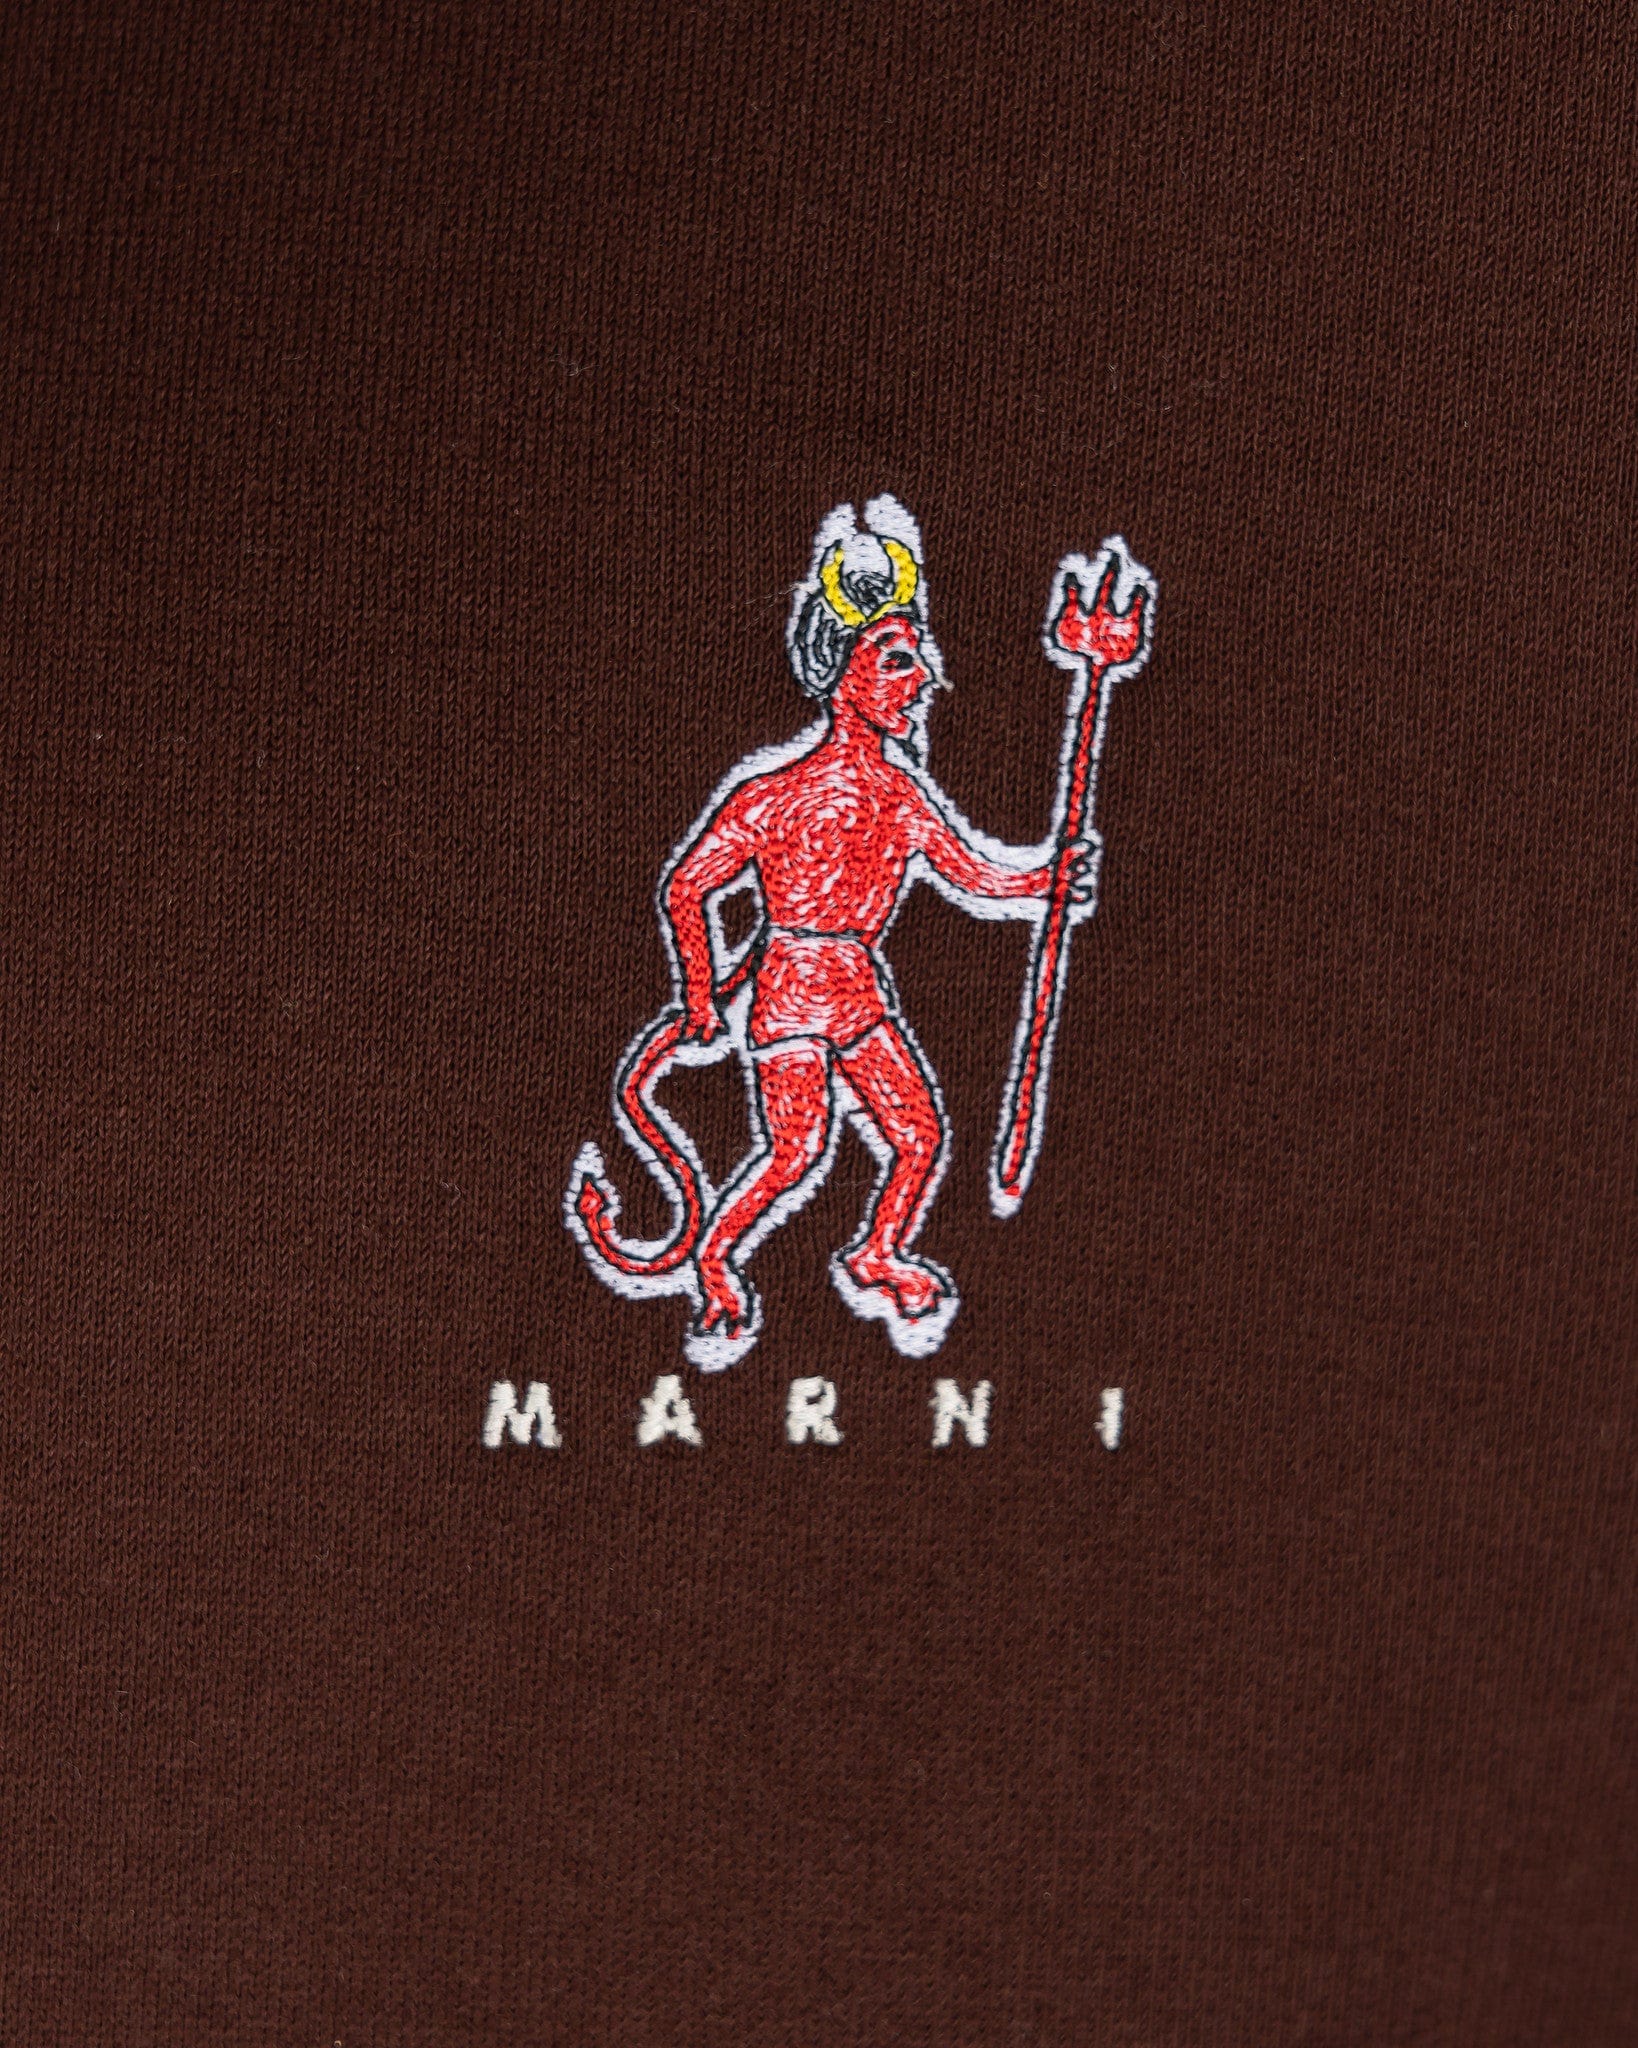 Marni Men's Sweatshirts 'El Diablito' Motif Hoodie in Black/Brown